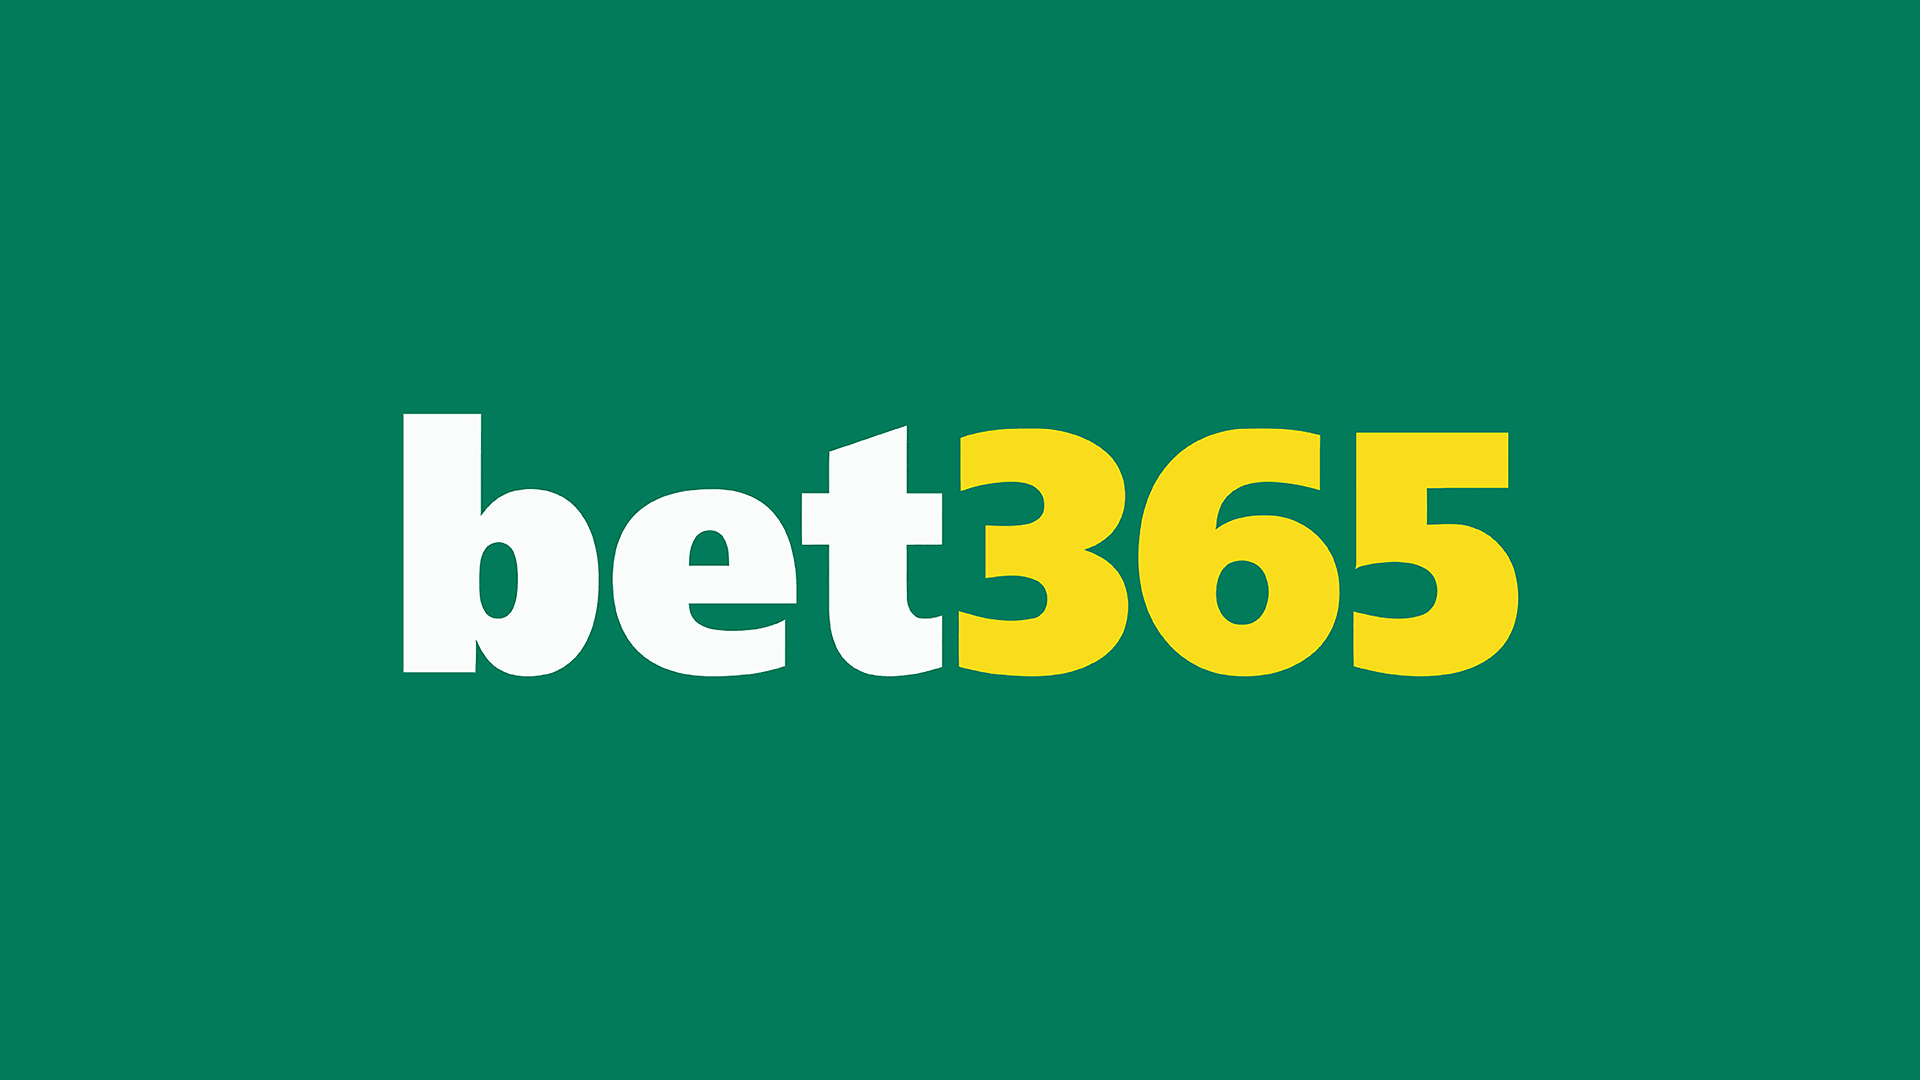 futebol fifa bet365